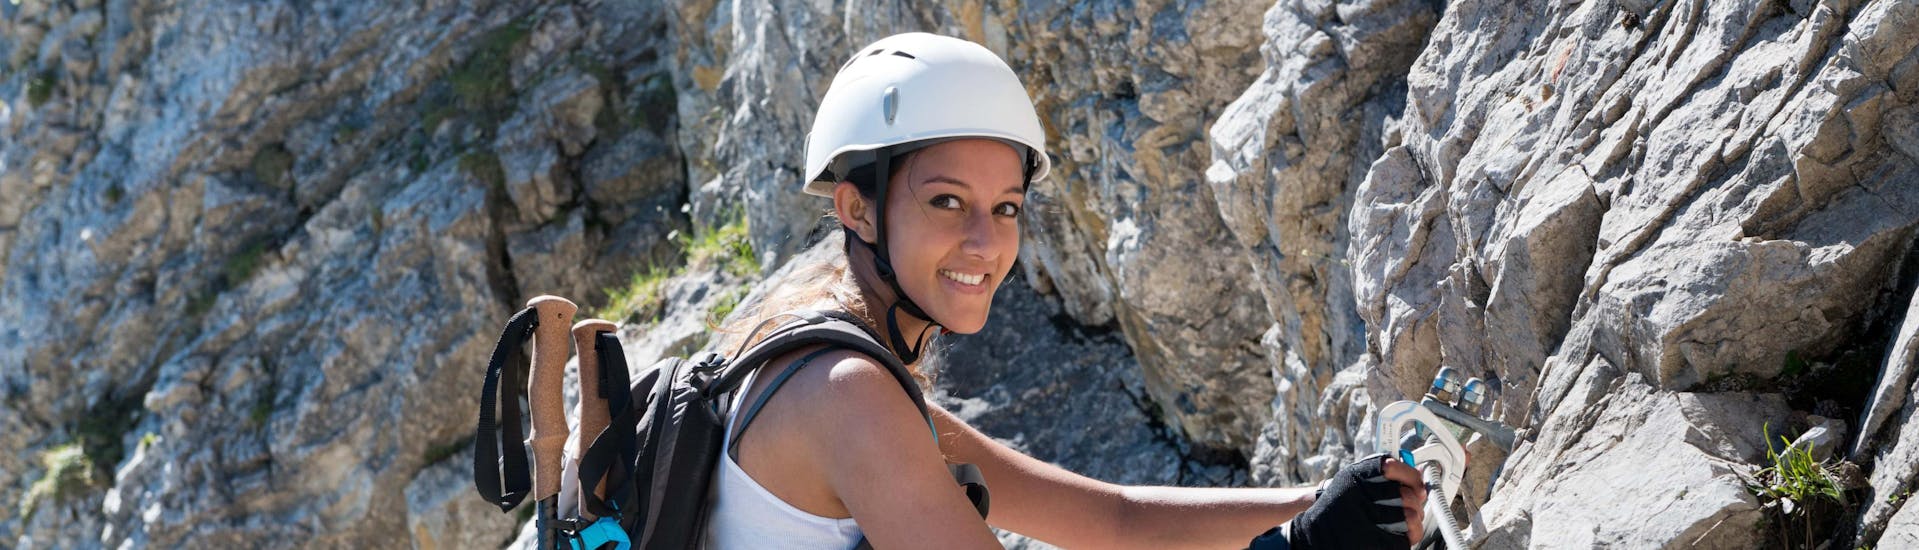 Eine junge Frau bei einer Via Ferrata Tour im Klettersteig Hotspot Gardasee.